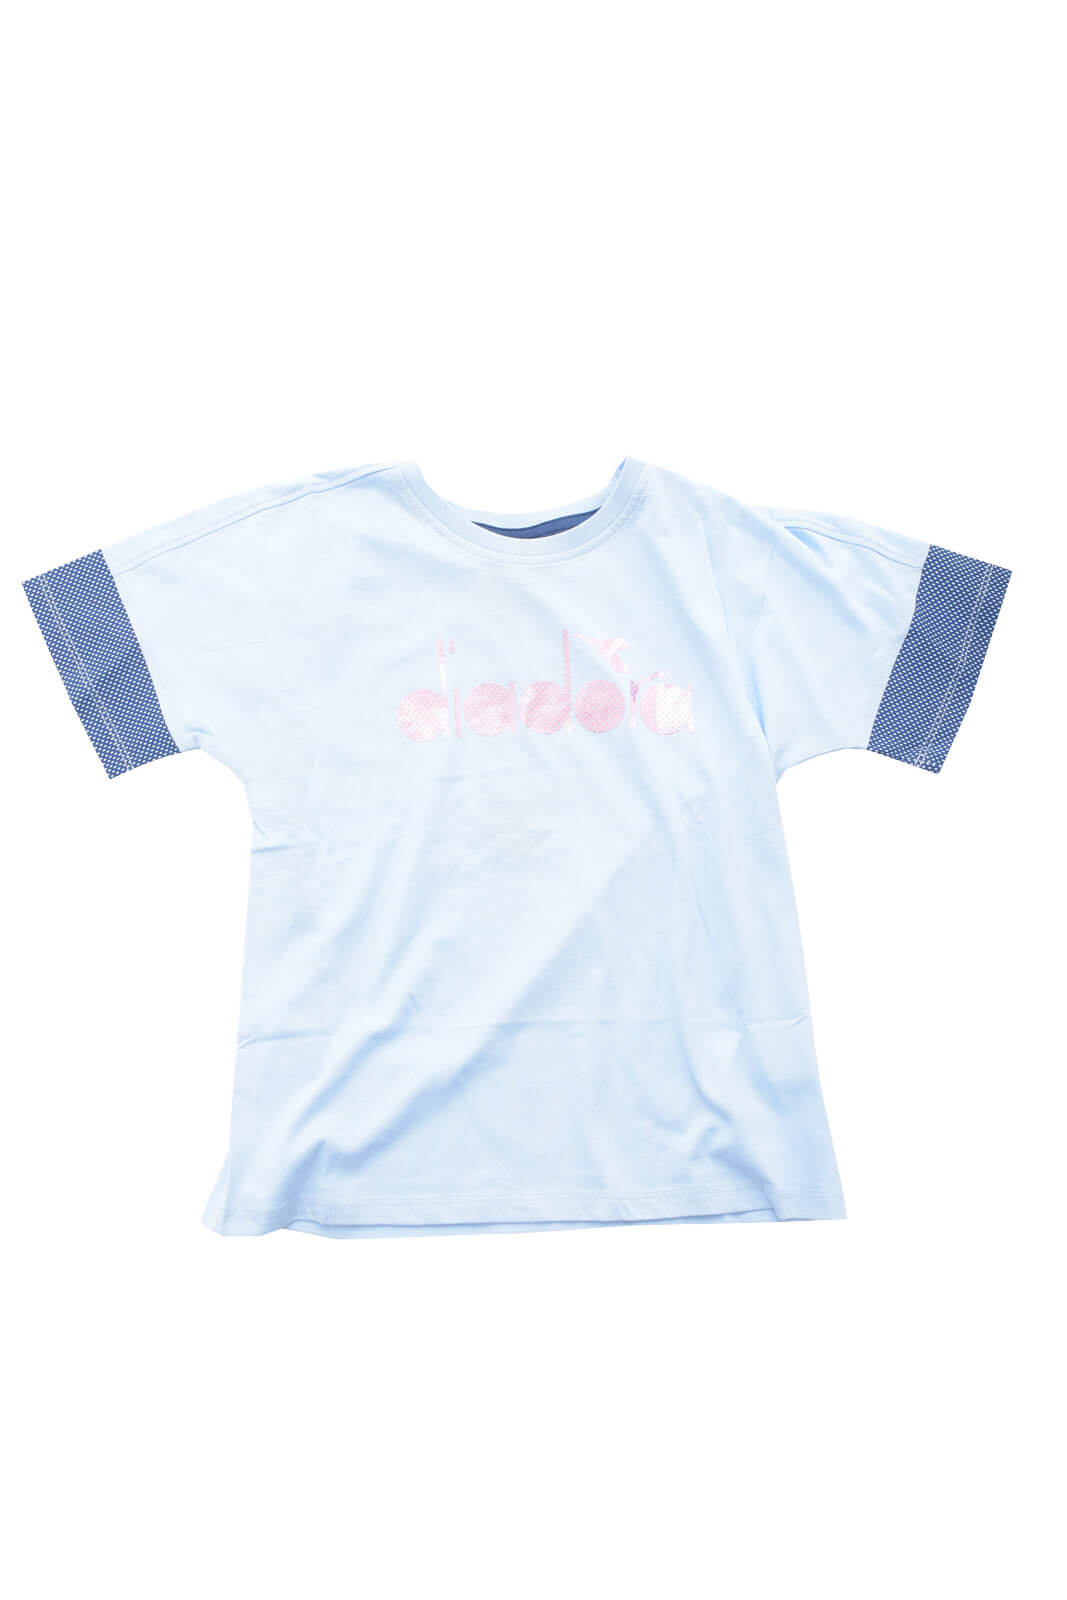 Diadora T Shirt for girls